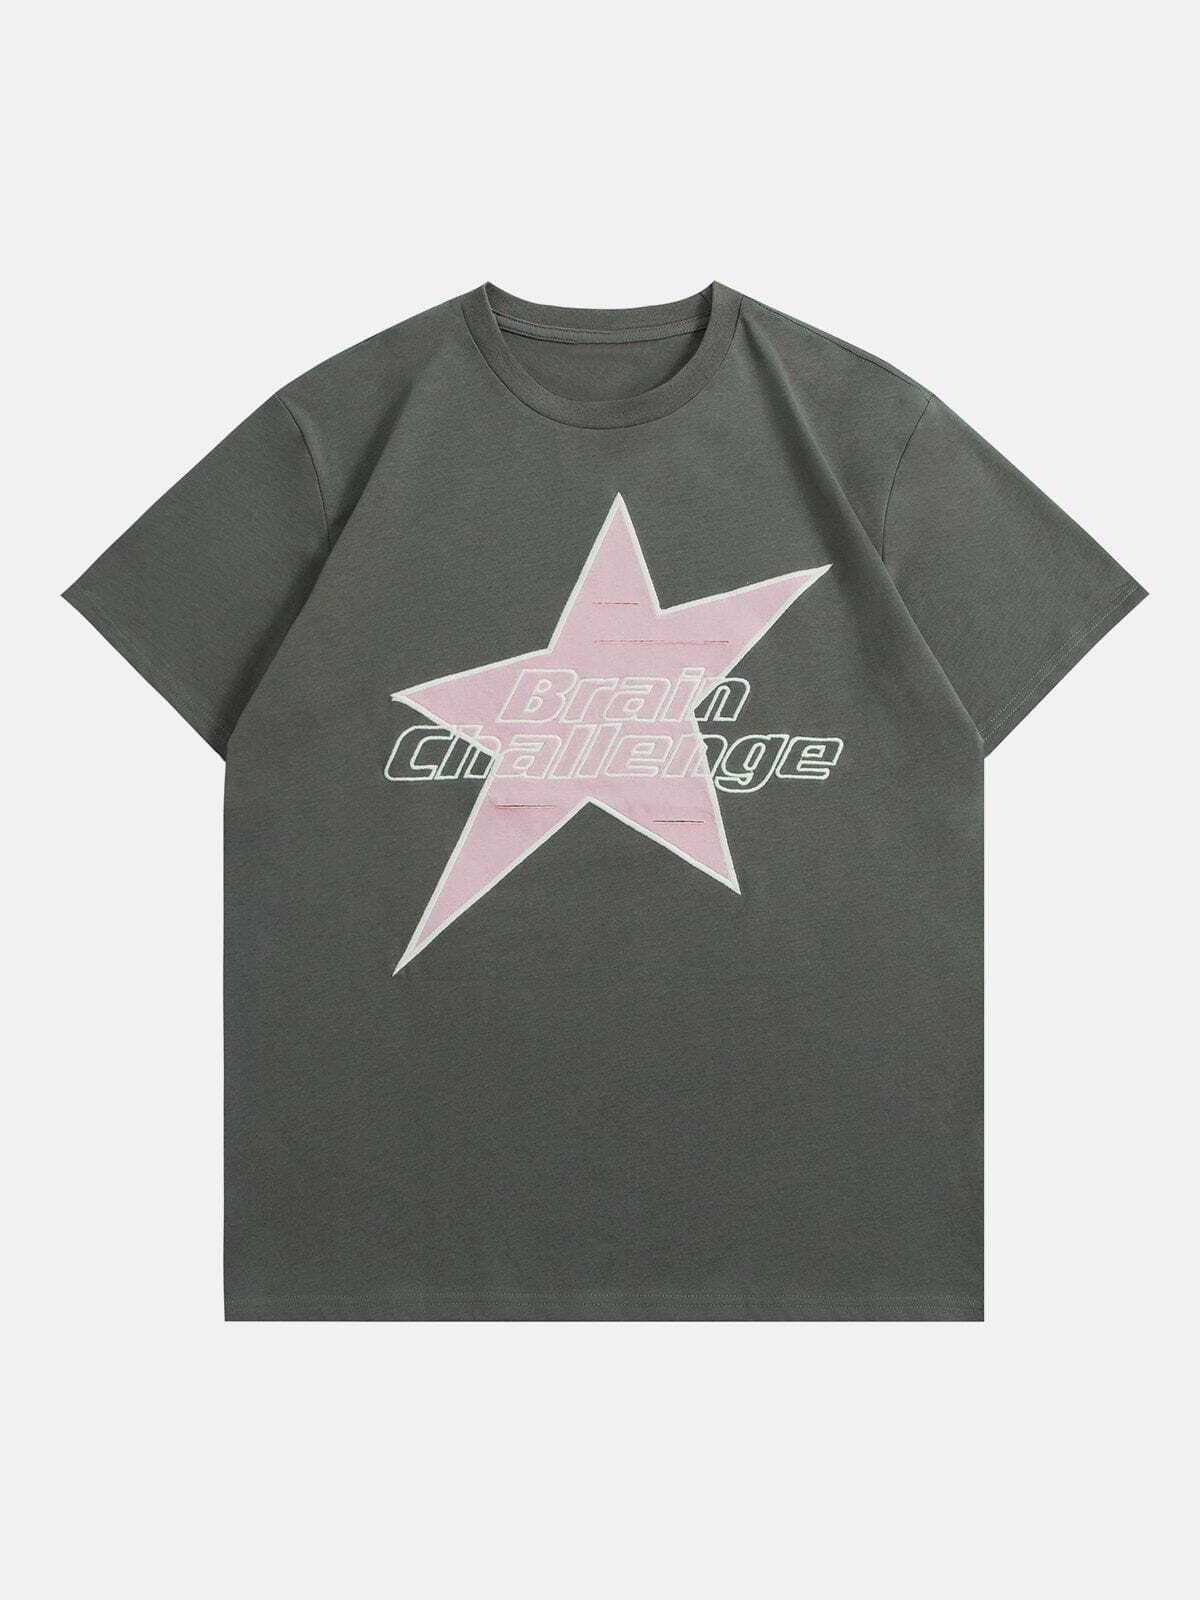 retro star letter print tshirt edgy  vibrant urban tee 4565